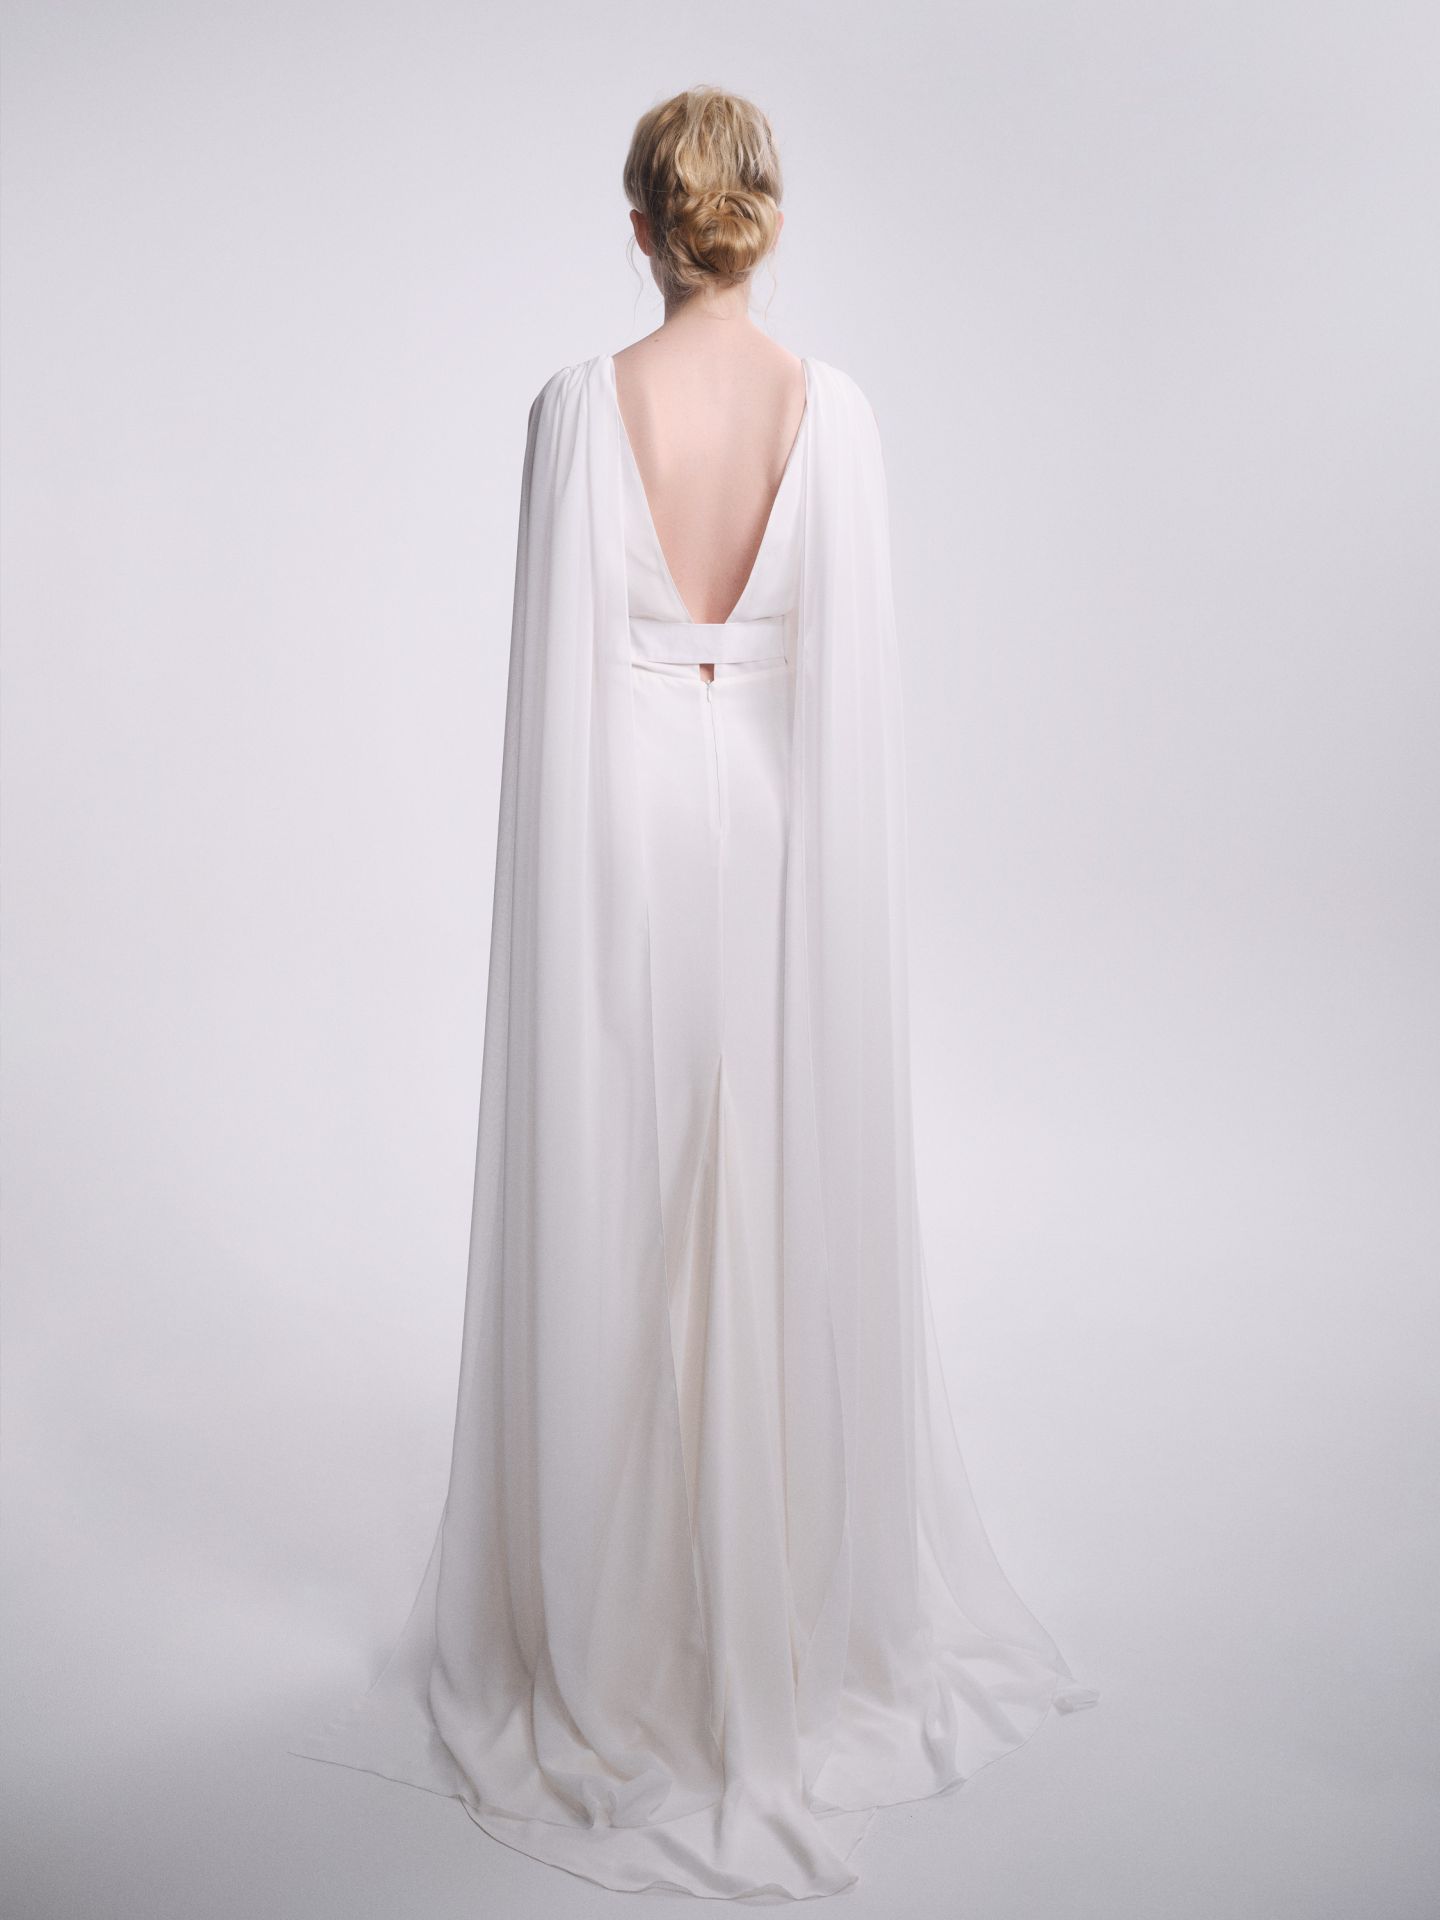 Modernes Brautkleid mit tiefem Rückenausschnitt und capeartigem Schulterdetail